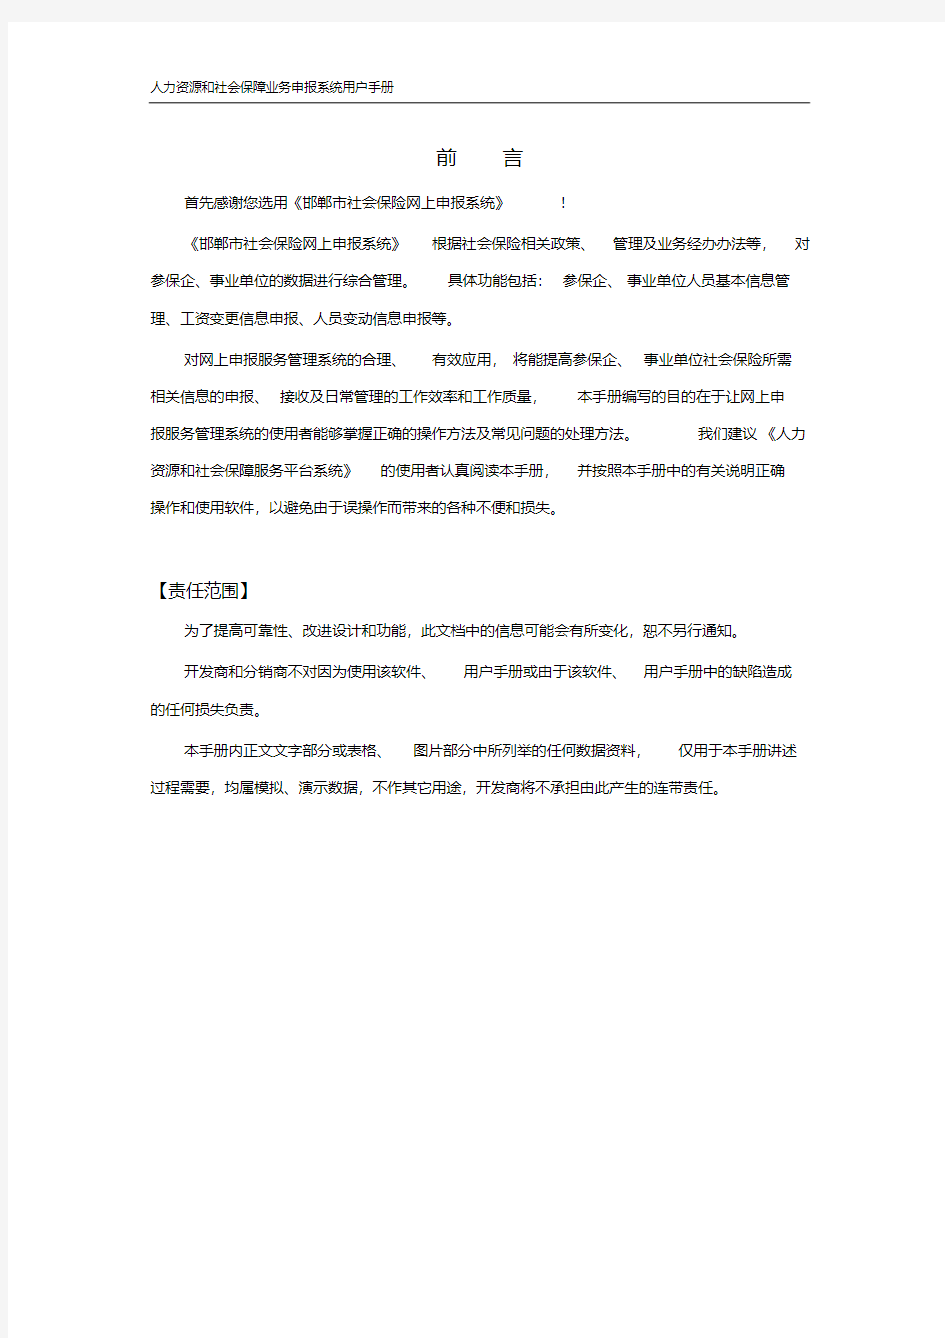 邯郸市社会保险网上申报系统用户手册